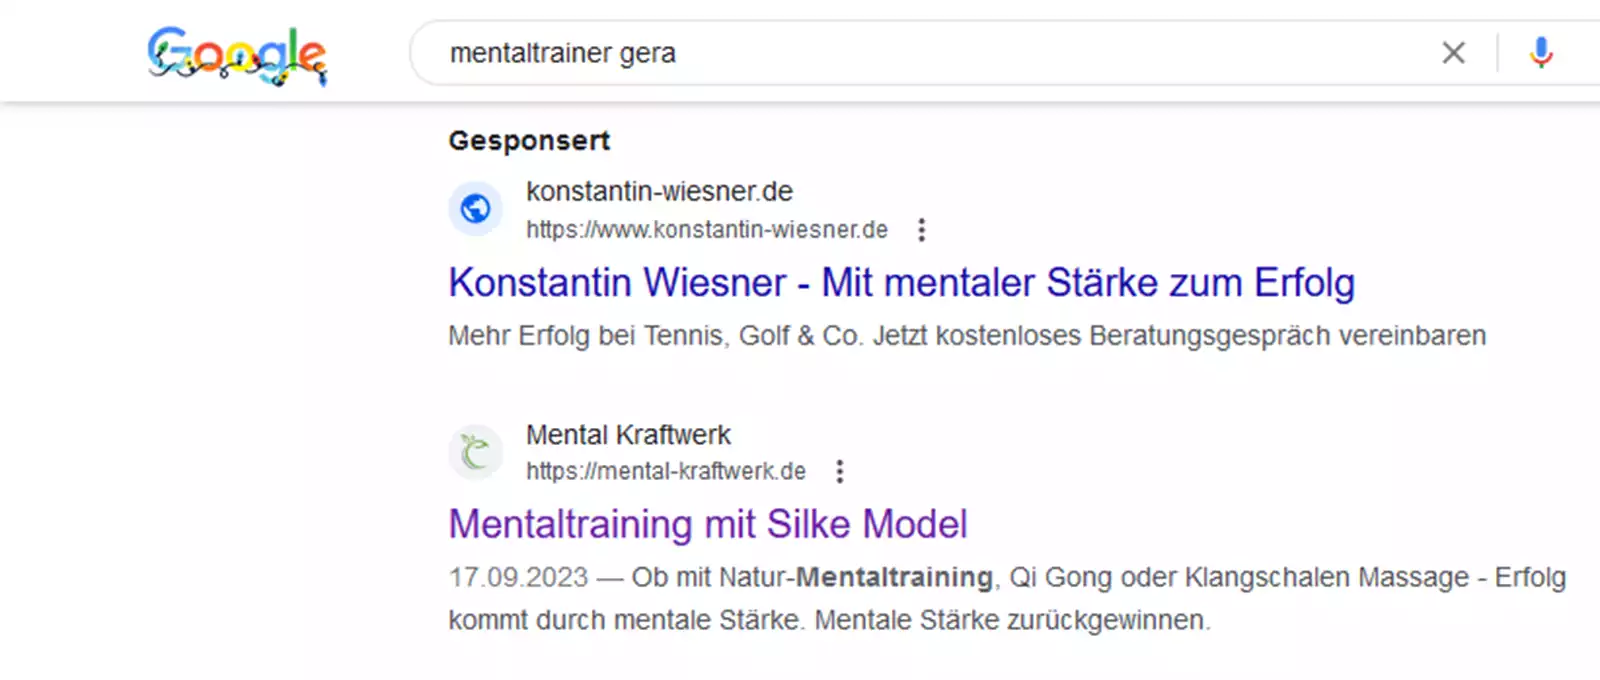 Hier sehen Sie den Screenshot der Suchergebnisse für das Keyword Mentaltrainer Gera